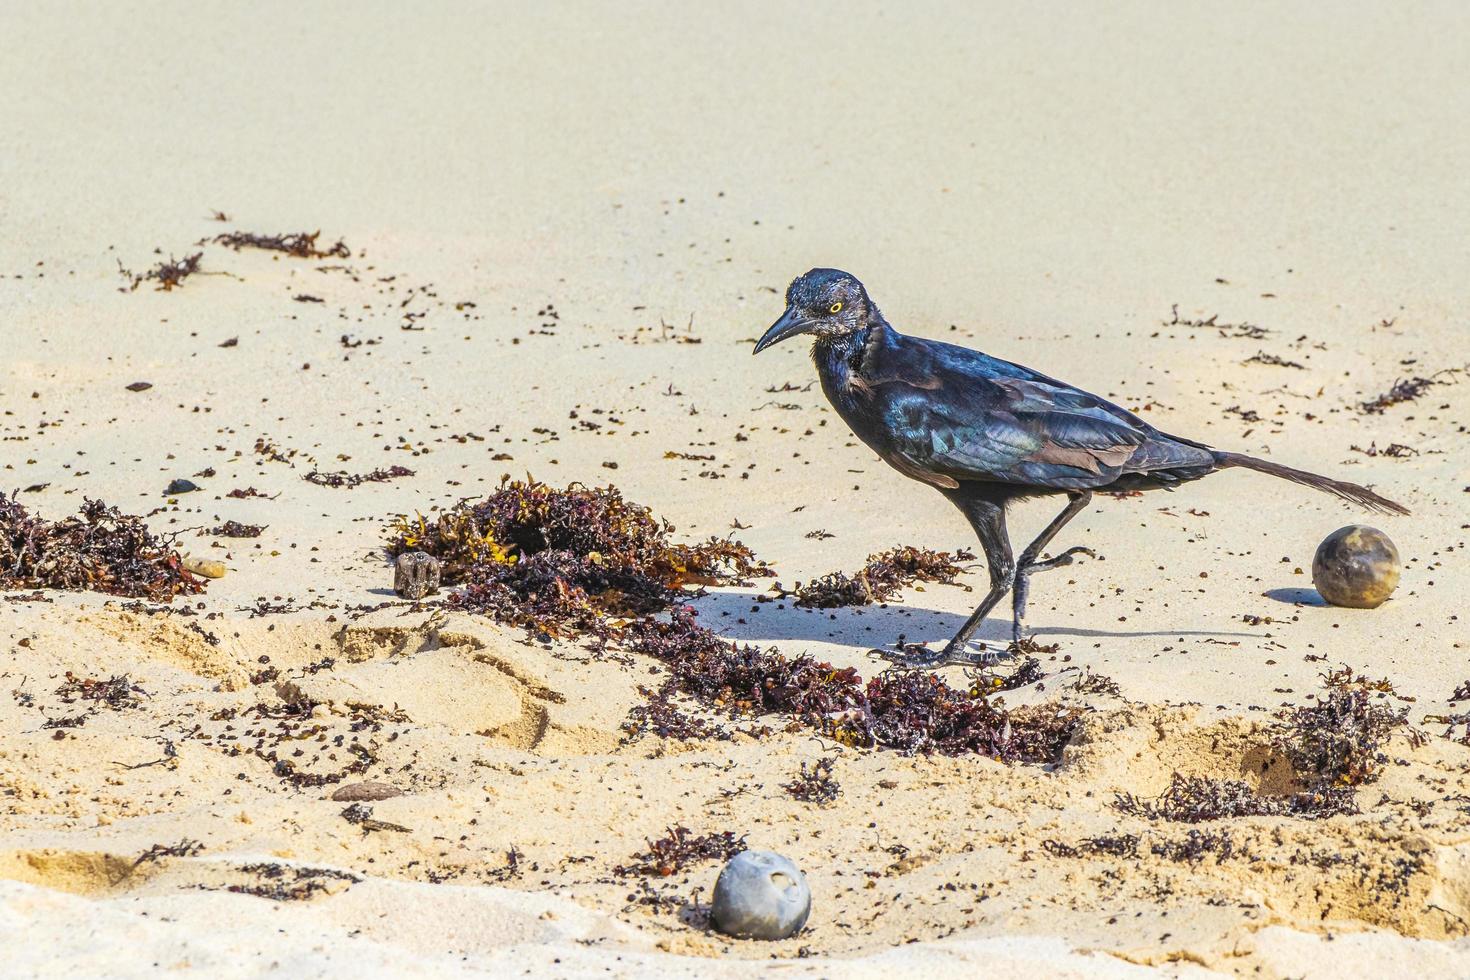 pássaro grackle-de-cauda-grande está comendo sargazo na praia do méxico. foto